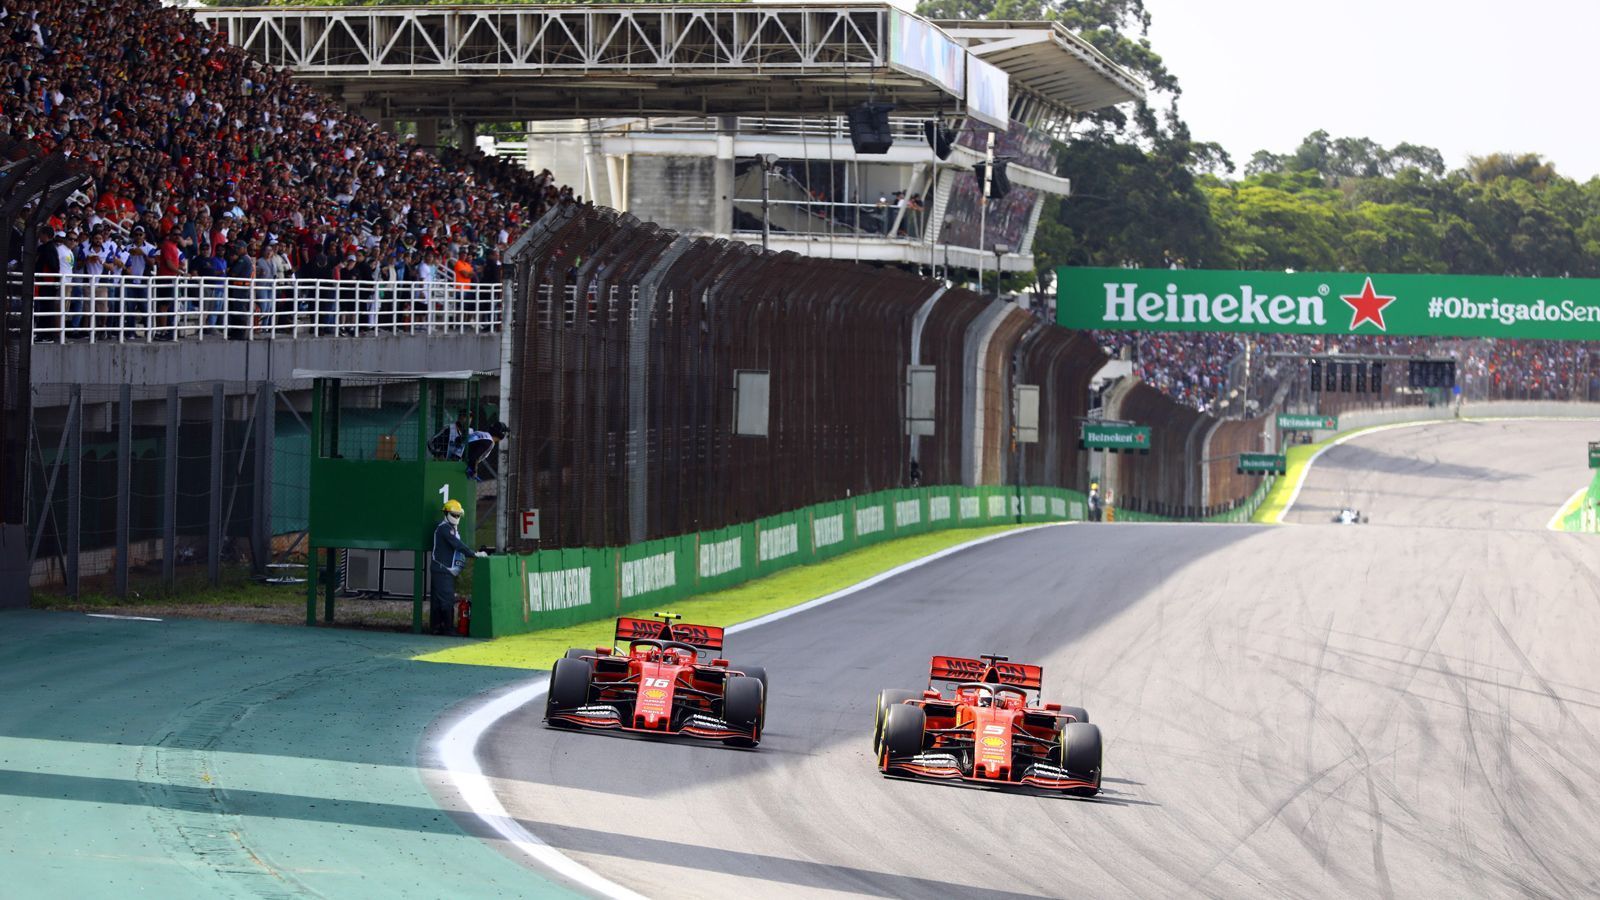 
                <strong>Fahrersituation: Kein Ende des Zoffs in Sicht</strong><br>
                Auch 2020 ist kein Ende der teaminternen Rivalität in Sicht. "Charles hat ein Jahr Erfahrung mit uns hinter sich. Sie werden auf demselben Level sein, sie können beide darum kämpfen, vorne zu sein", sagte Teamchef Mattia Binotto. Klar ist also nur, dass nichts klar ist. Wie im vergangenen Jahr tragen Vettel und Leclerc ihren Zweikampf mit offenem Visier auf der Strecke aus, während Mercedes und Red Bull mit klaren Nummer-1-Fahrern in die Saison gehen.
              